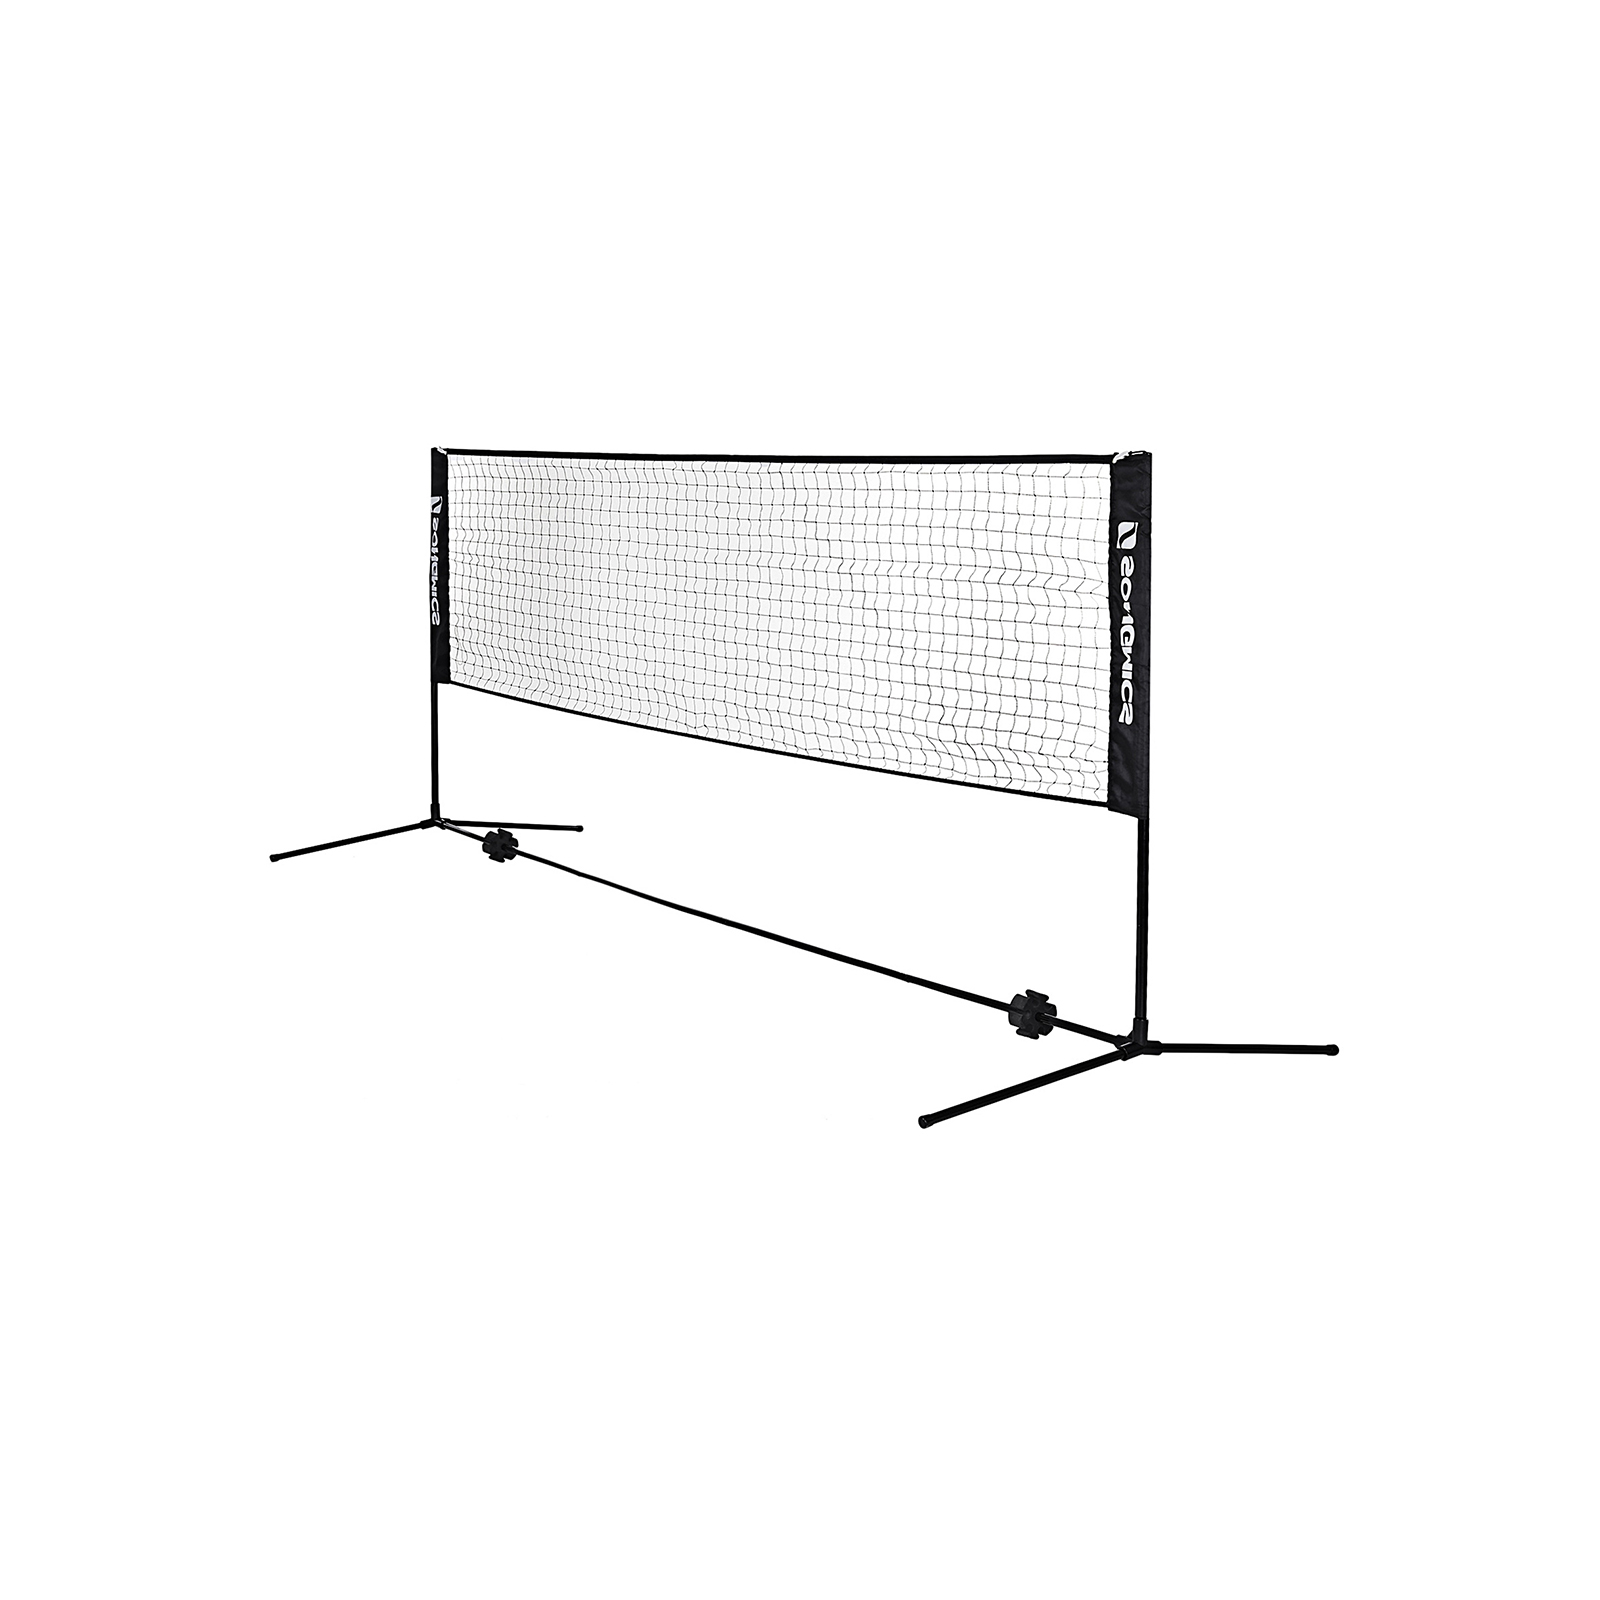 Sportnet – Badmintonnet – Tennisnet – Volleybalnet – In hoogte verstelbaar – Met transporttas – Blauw